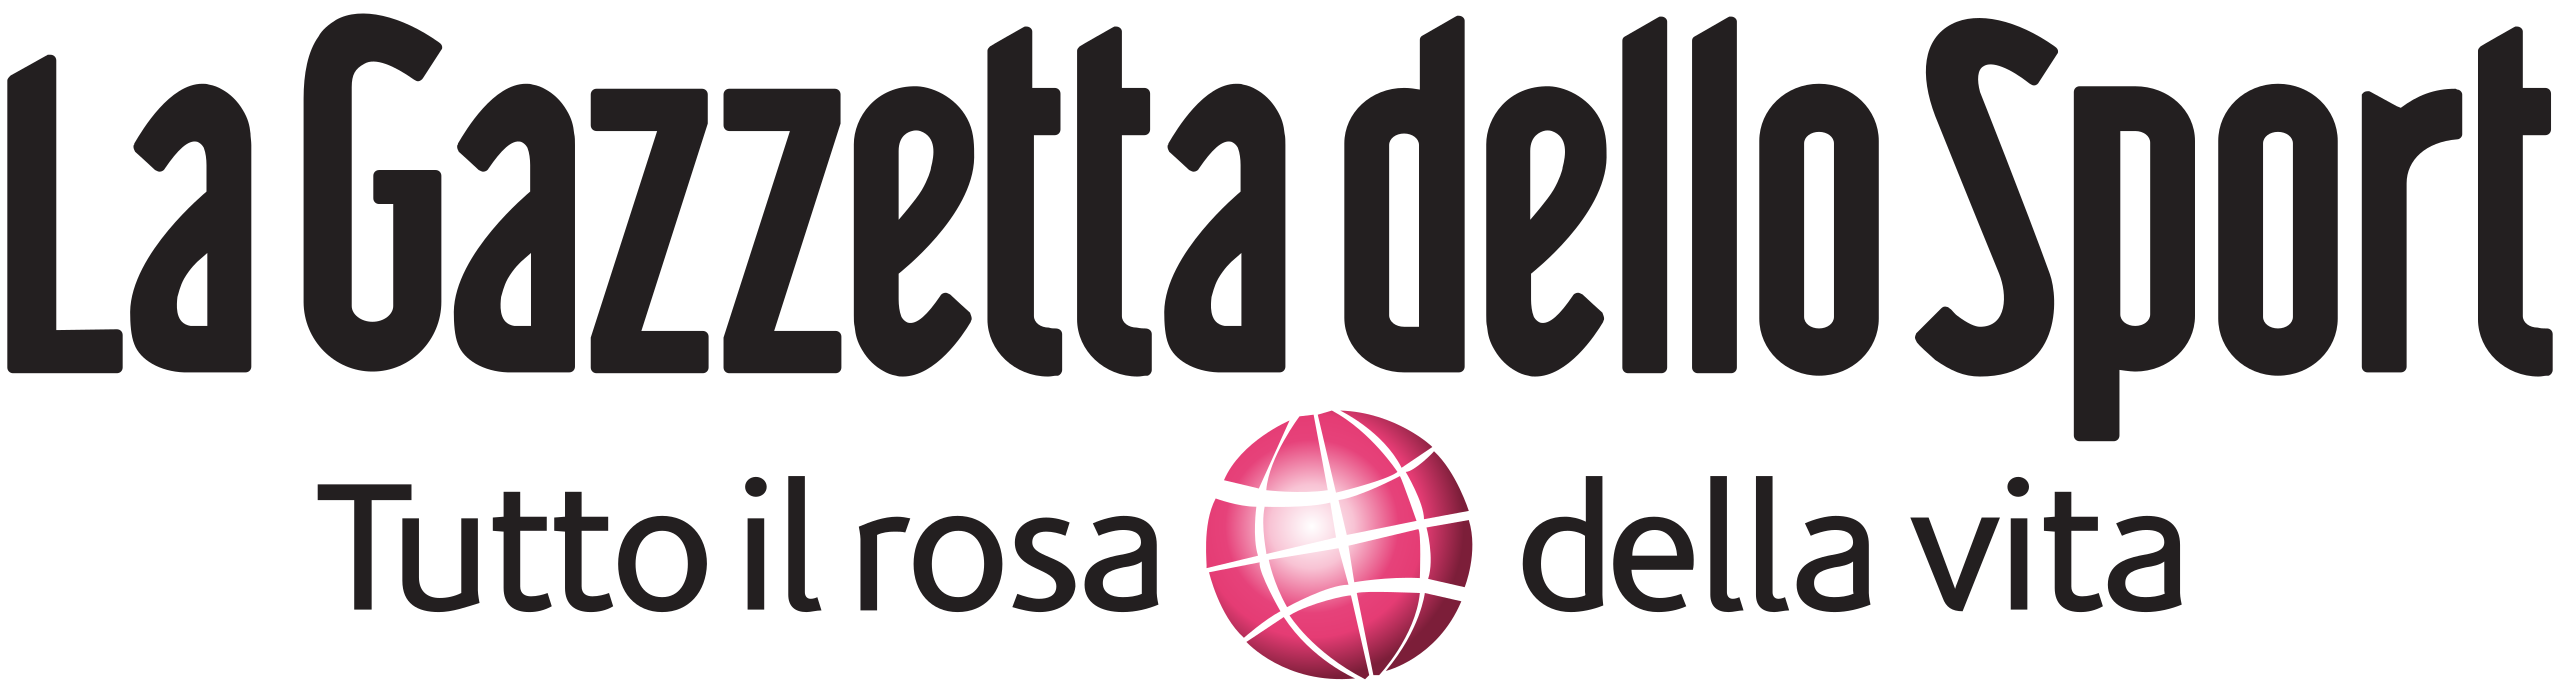 logo_gazzetta